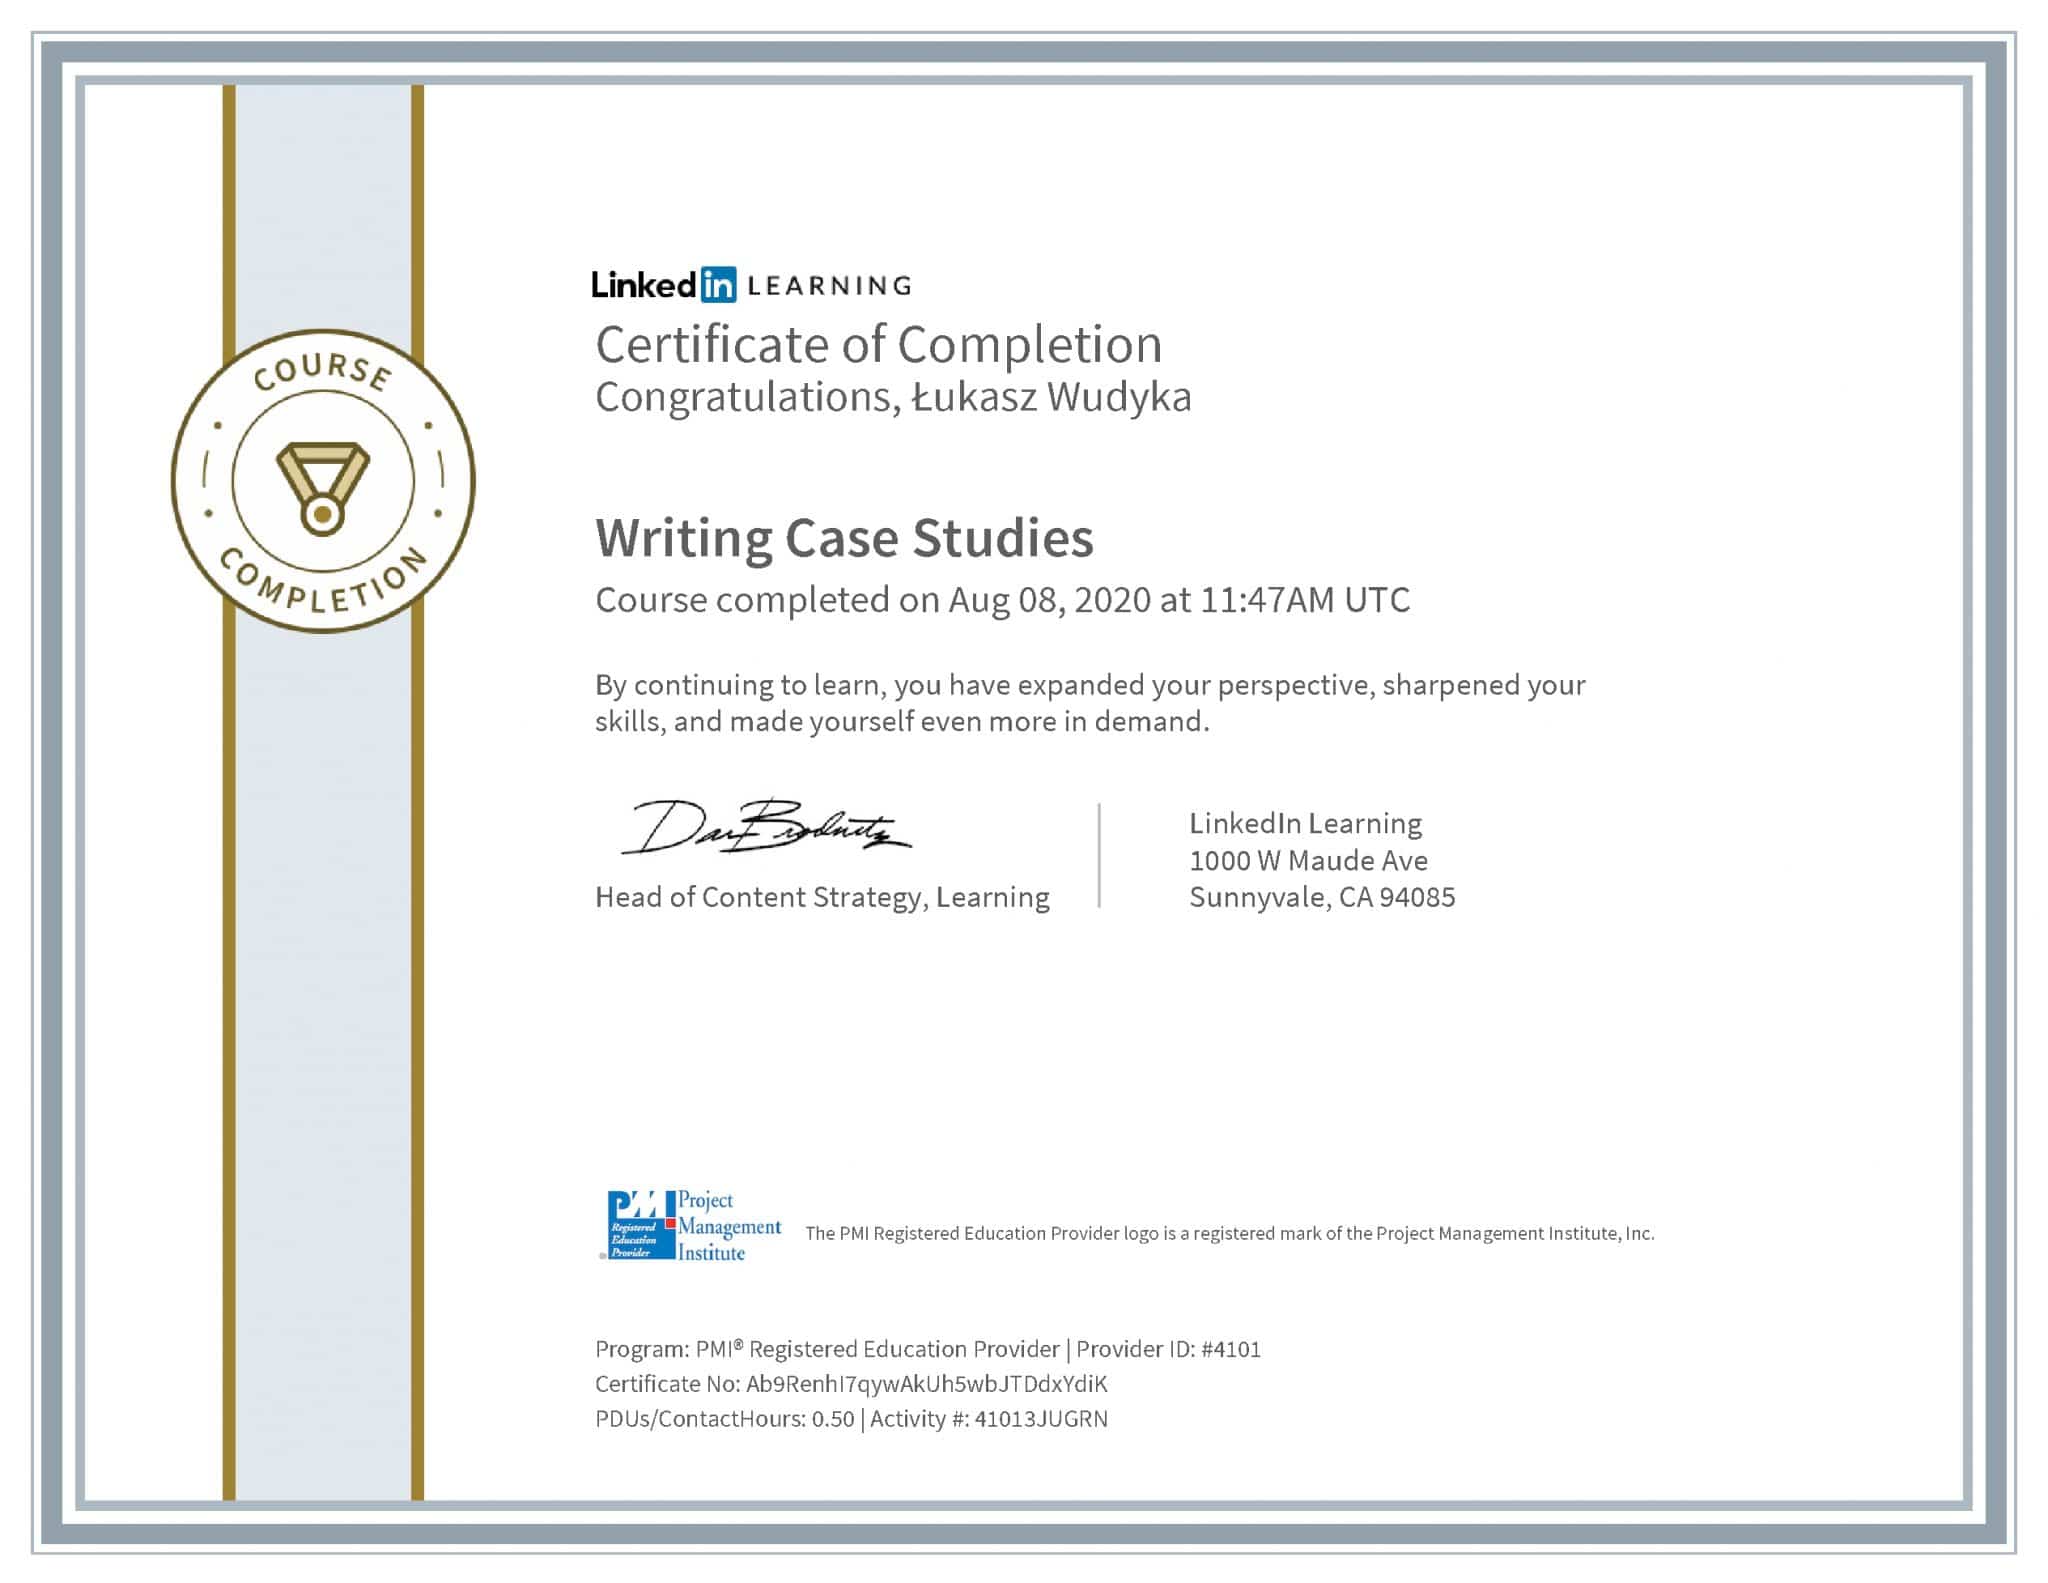 Łukasz Wudyka certyfikat LinkedIn Writing Case Studies PMI